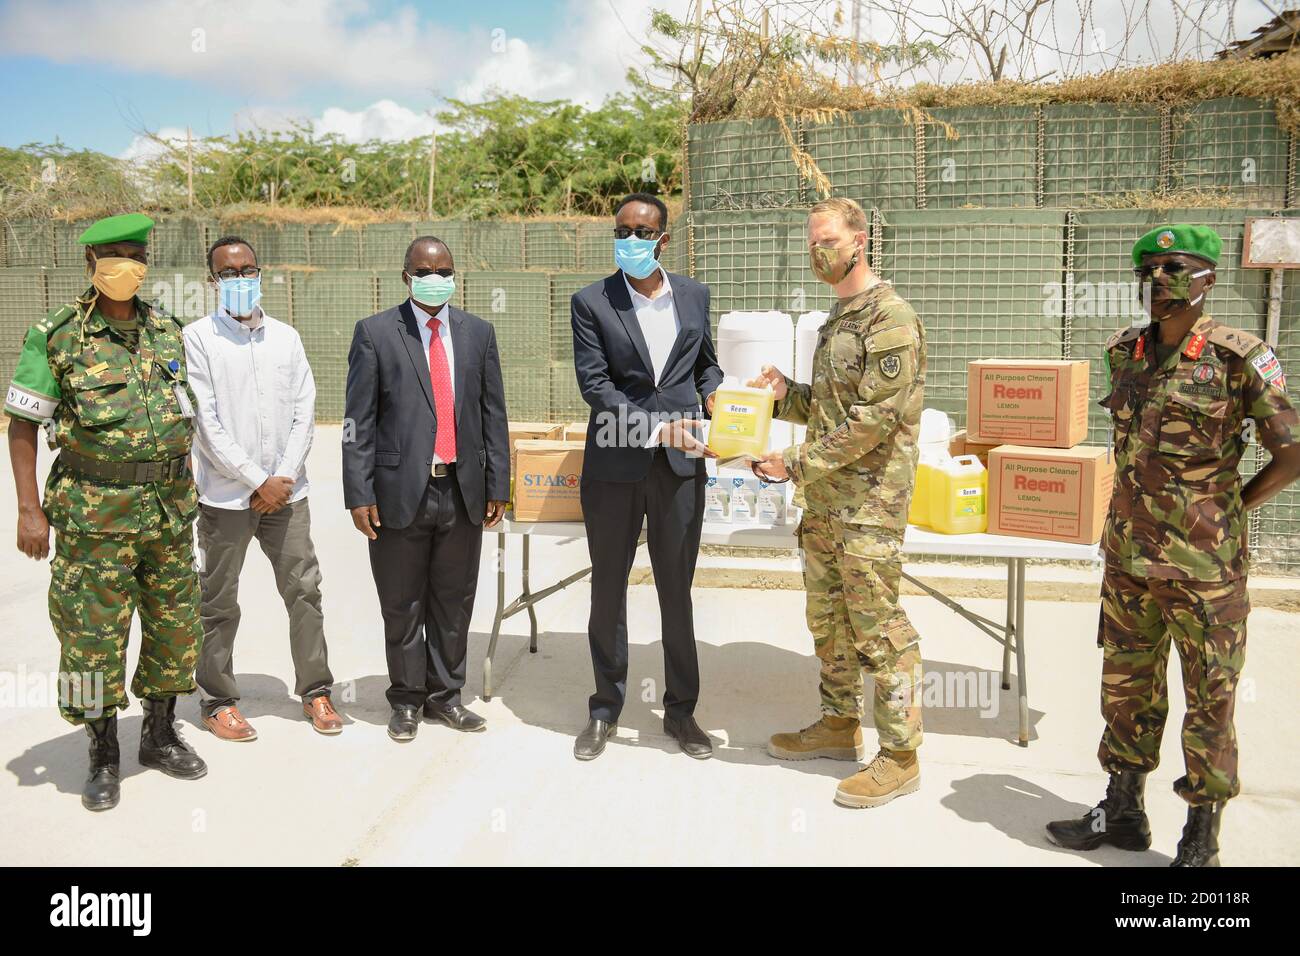 El Coronel Christian Werner, el Attache de la Defensa de los Estados Unidos en Somalia, entrega al Sr. Said Bashir Mohamed, el funcionario de suministros del Hospital de Referencias Banadir, parte de los artículos médicos y sanitarios donados a la Misión de la Unión Africana en Somalia (AMISOM). Los artículos, destinados a beneficiar a las personas desplazadas en el interior del país (PDI) en la zona de responsabilidad de la AMISOM, se entregaron en Mogadishu, Somalia, el 8 de septiembre de 2020. Foto de stock